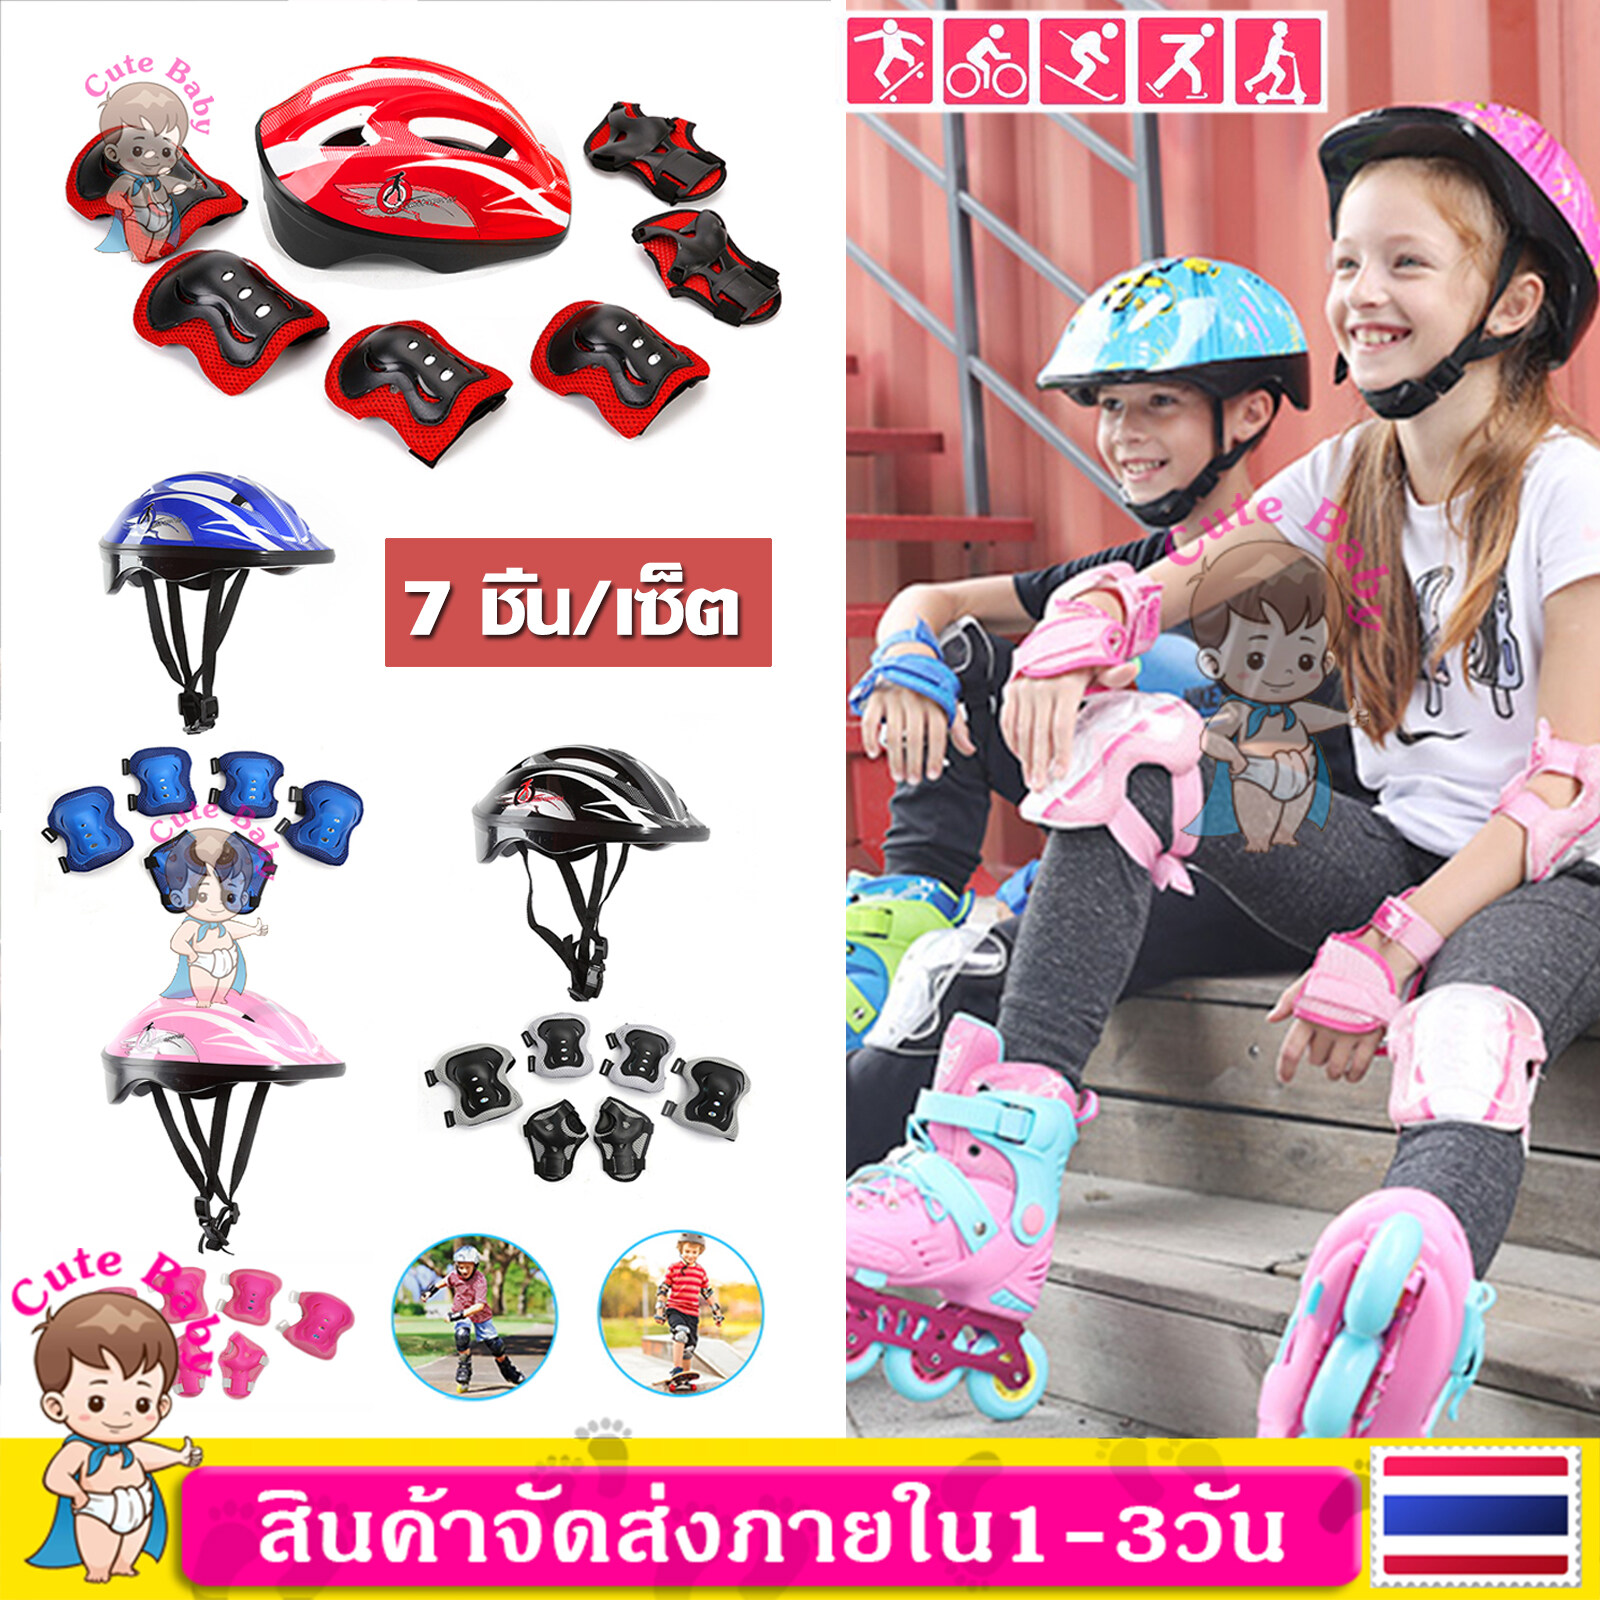 【7ชิ้น/เซ็ต】อุปกรณ์ป้องกันเด็ก ชุดป้องกันเด็ก สนับเข่า สนับมือ สนับข้อศอก หมวกนิรภัย อุปกรณ์ป้องกันล้ม สำหรับเด็ก 5-12ปี Kids Safety Helmet Knee Elbow Pad Sets 7PCS/Set MY145